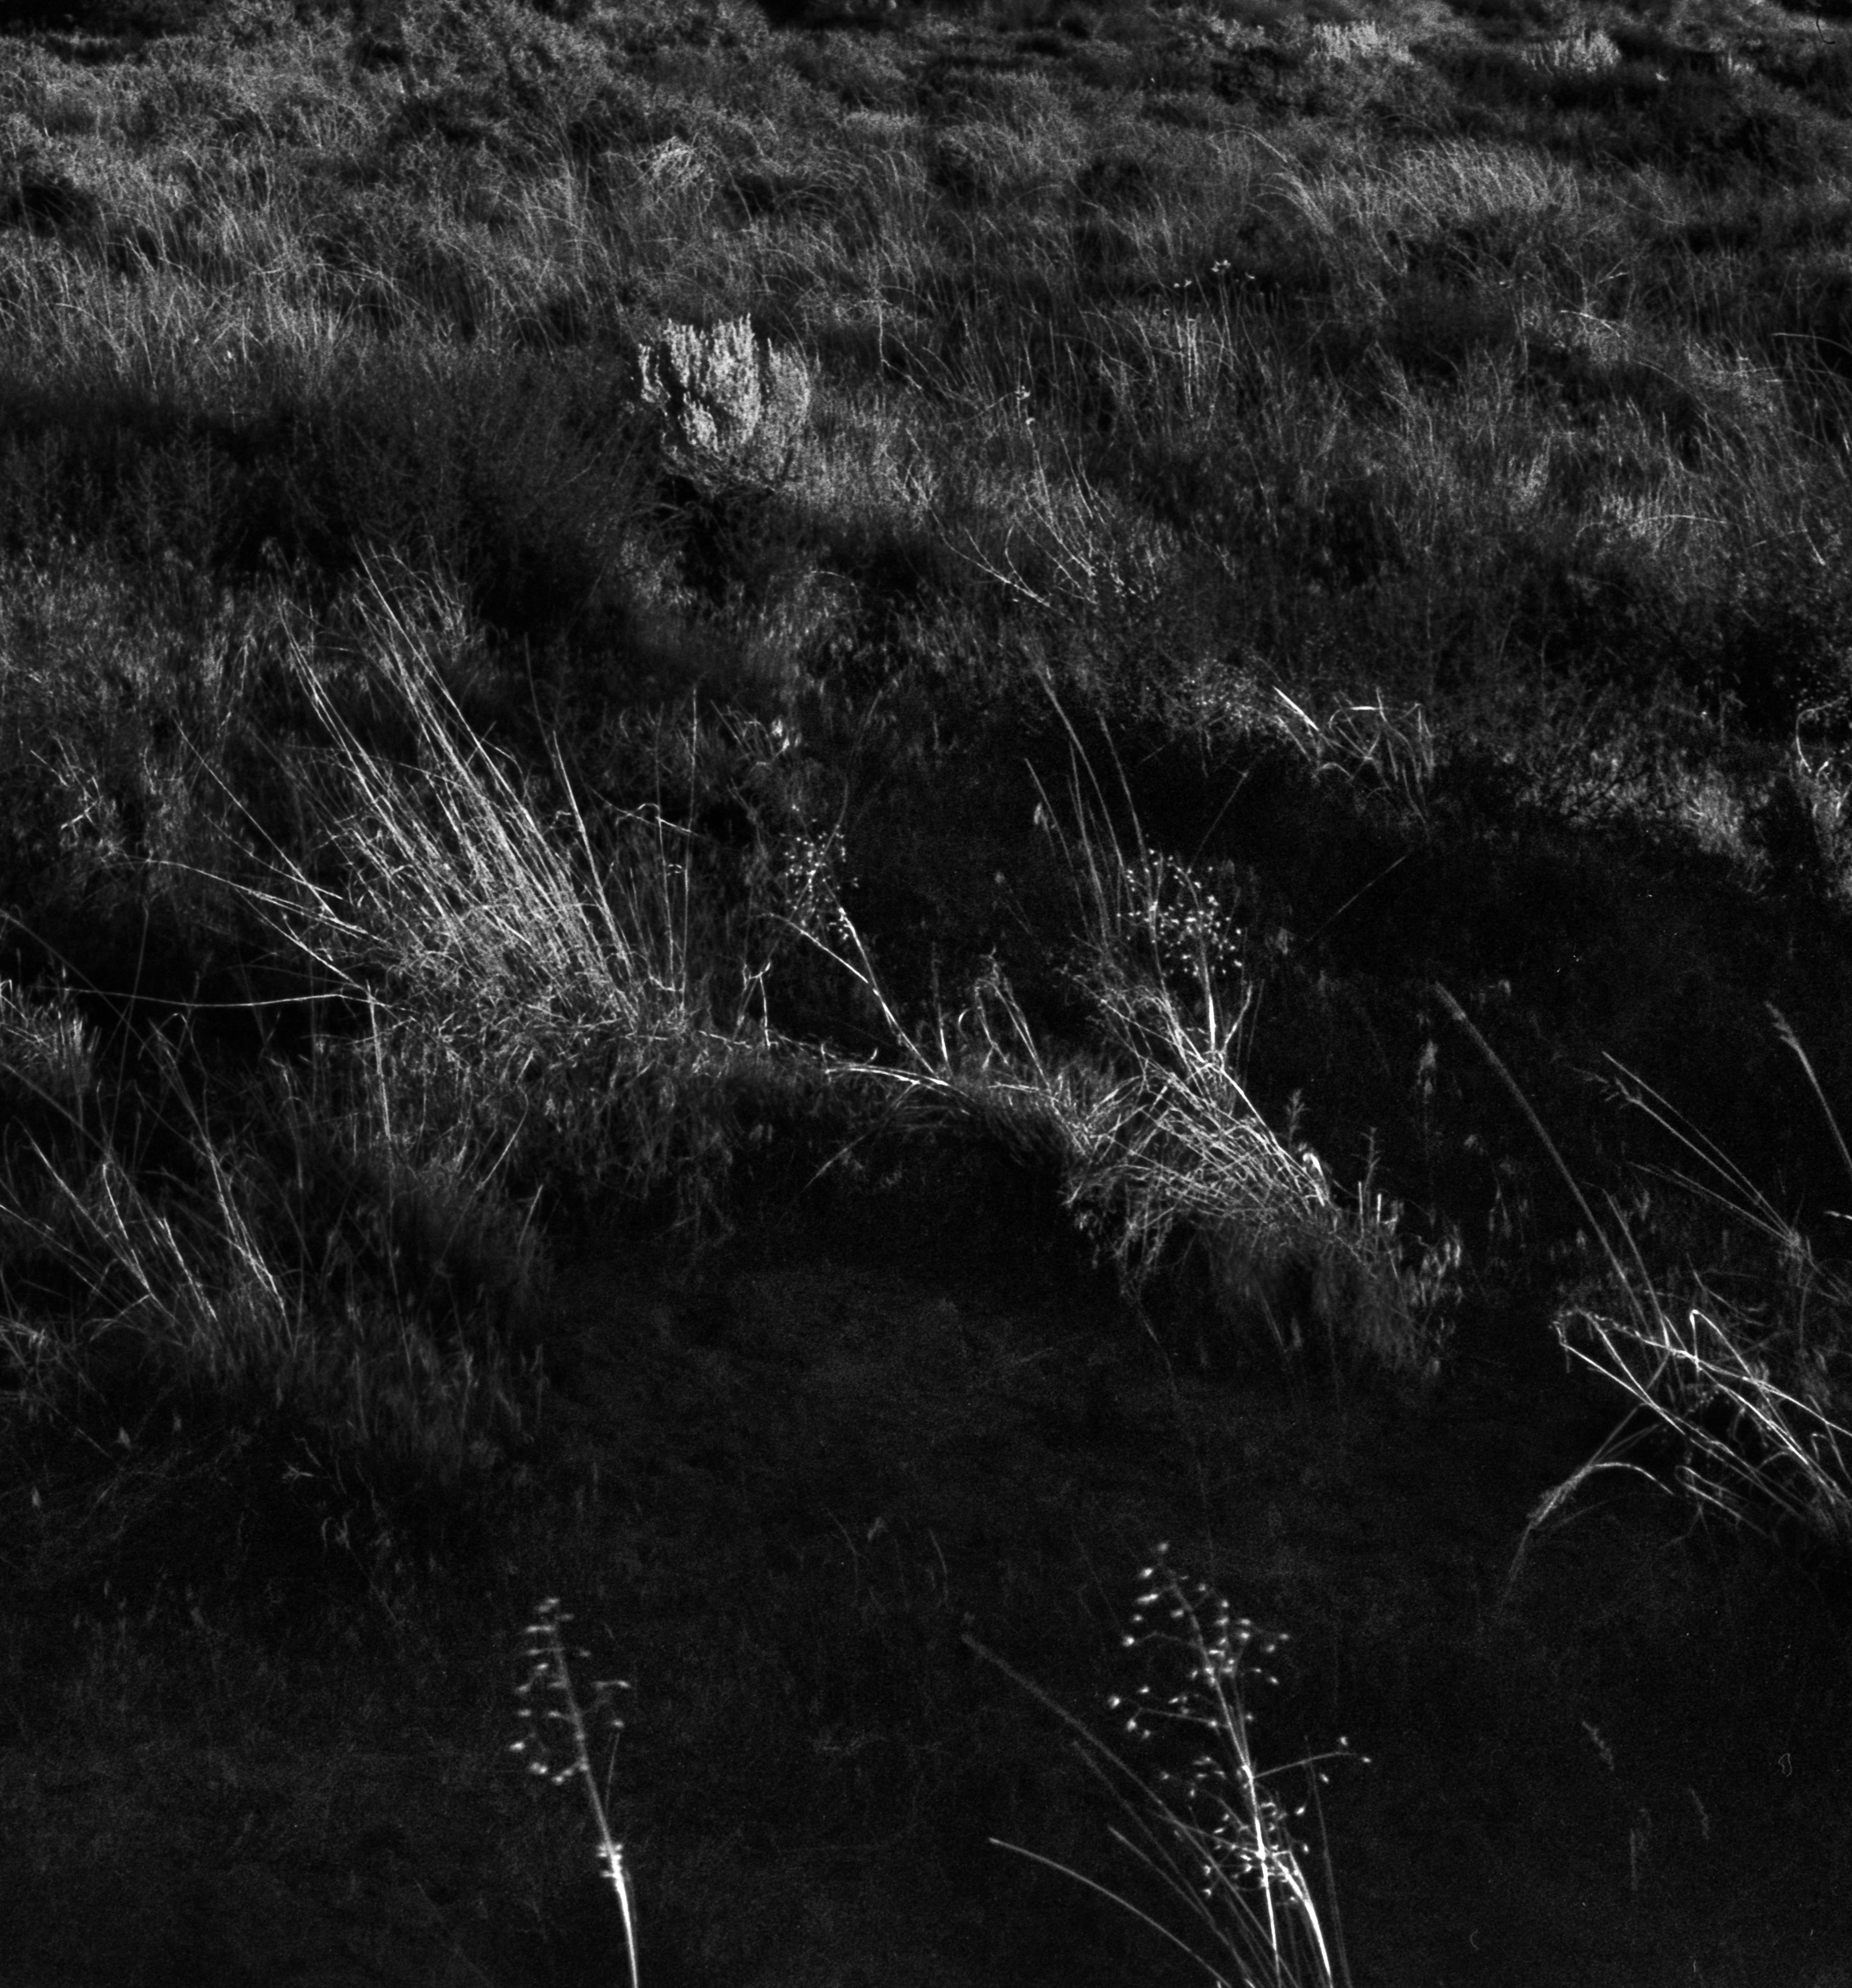 Sanddünenbögen #2 

Utah, USA, 2023

Limitierte Auflage von 20 Stück

Das Foto wurde mit einer Linhof-Großformatkamera aus der Mitte des letzten Jahrhunderts aufgenommen.

Gedruckt auf archivfähigem Hahnemühle Photo Rag Baryta Papier. Signiert auf